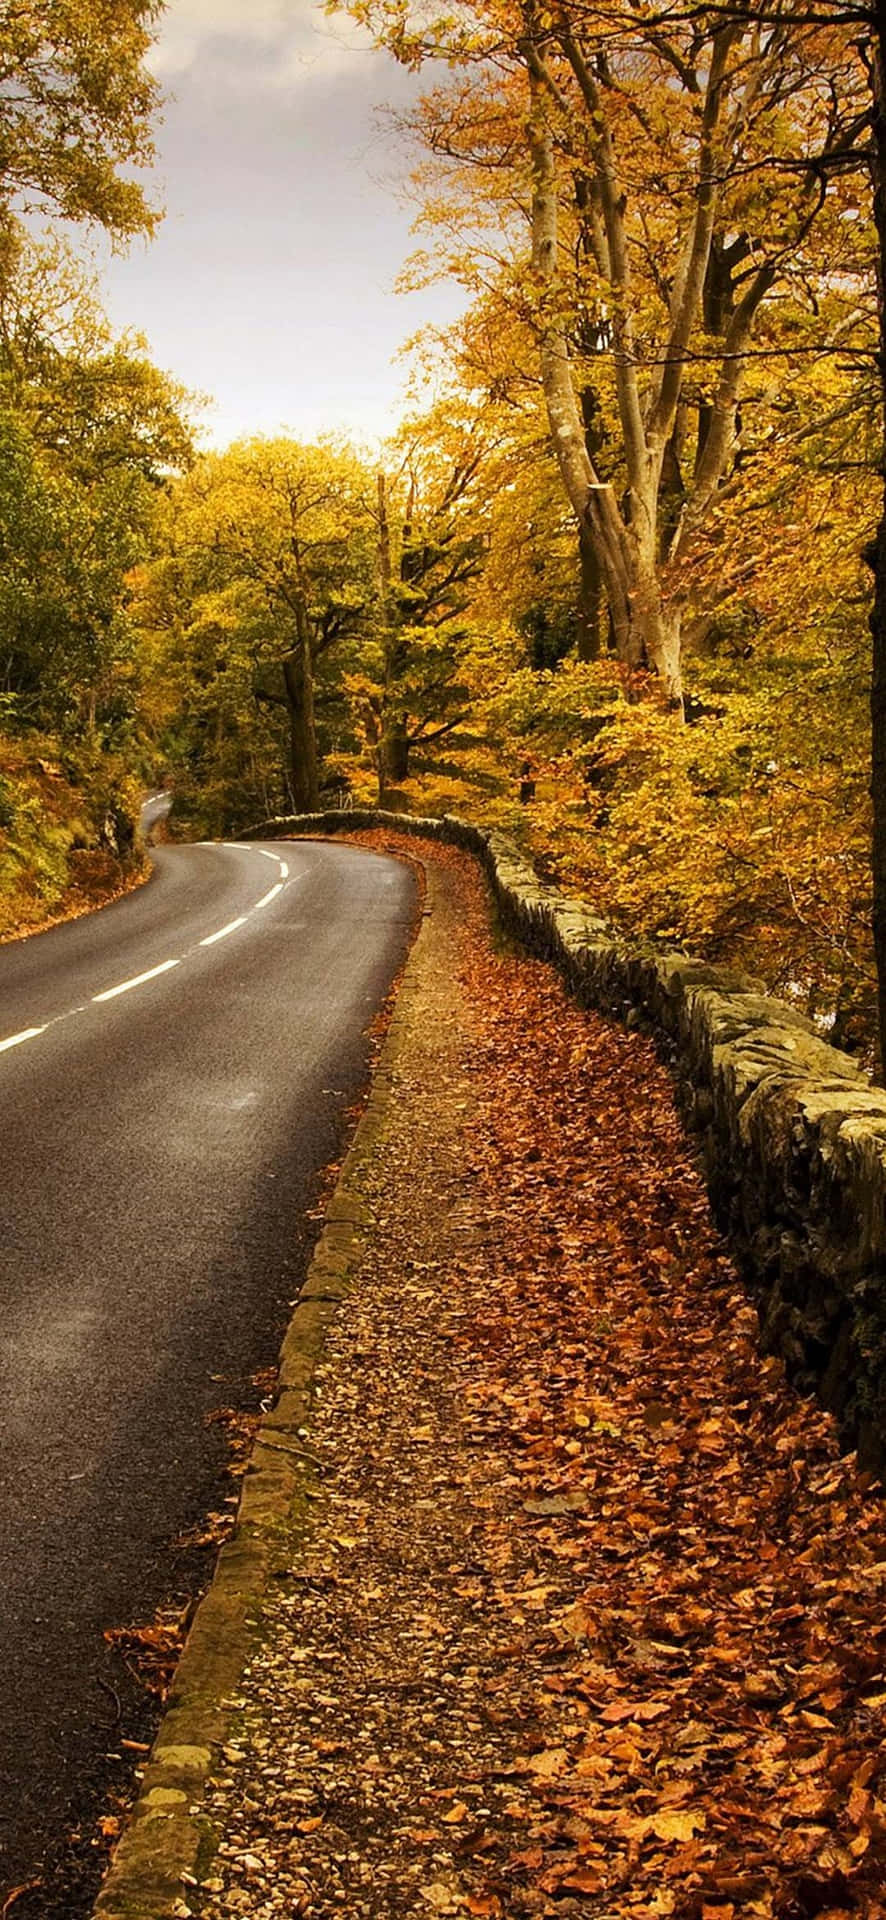 Golden Autumn Roadway Wallpaper